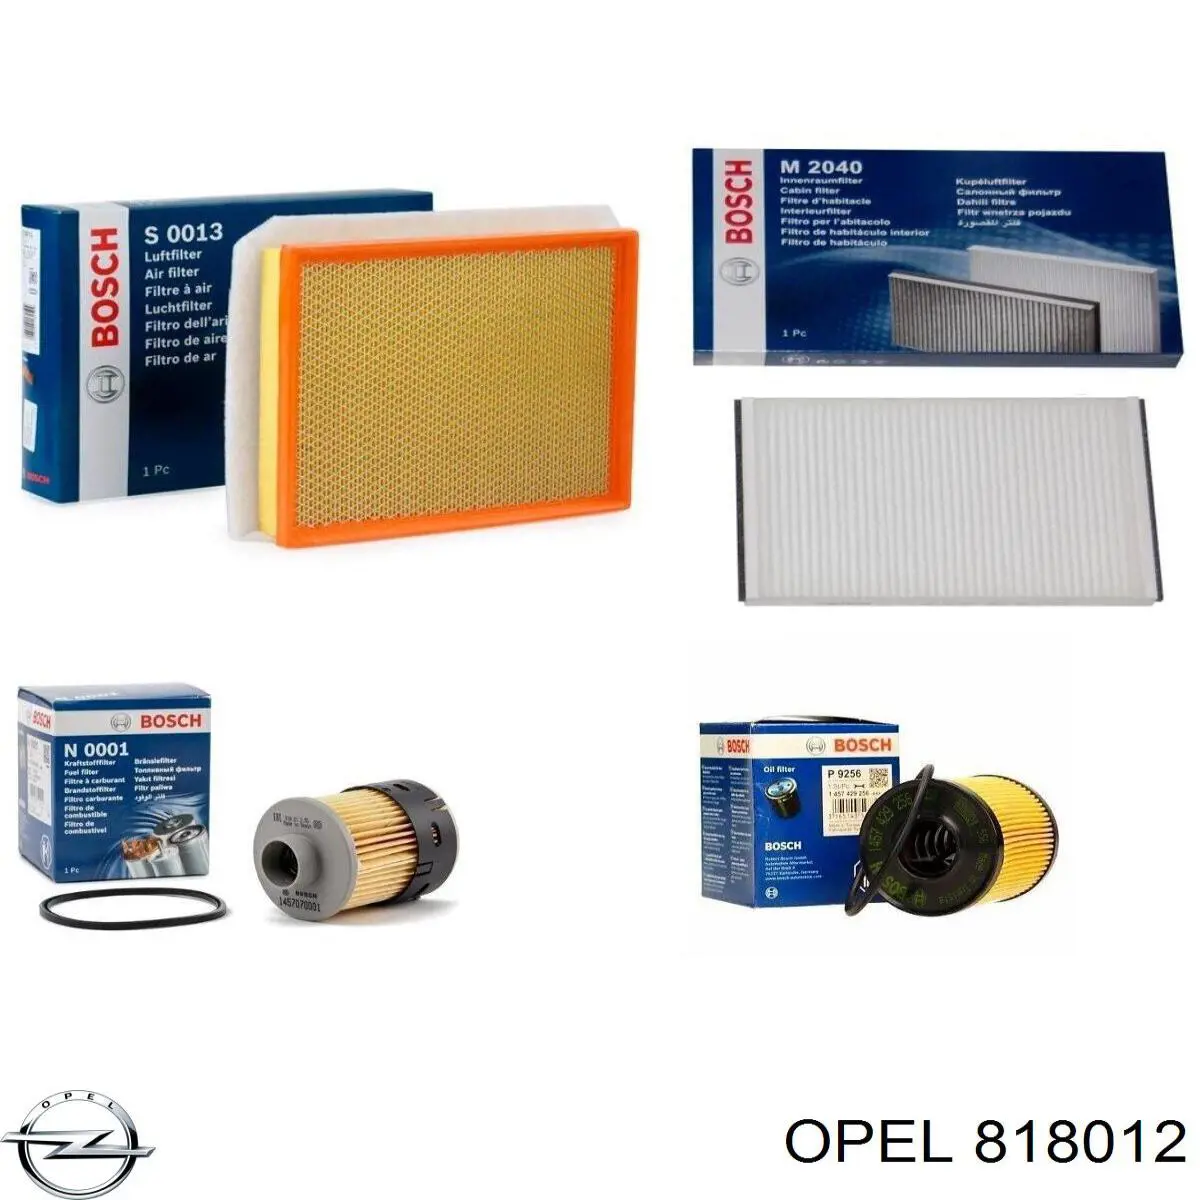 8180.12 Opel filtro de combustible